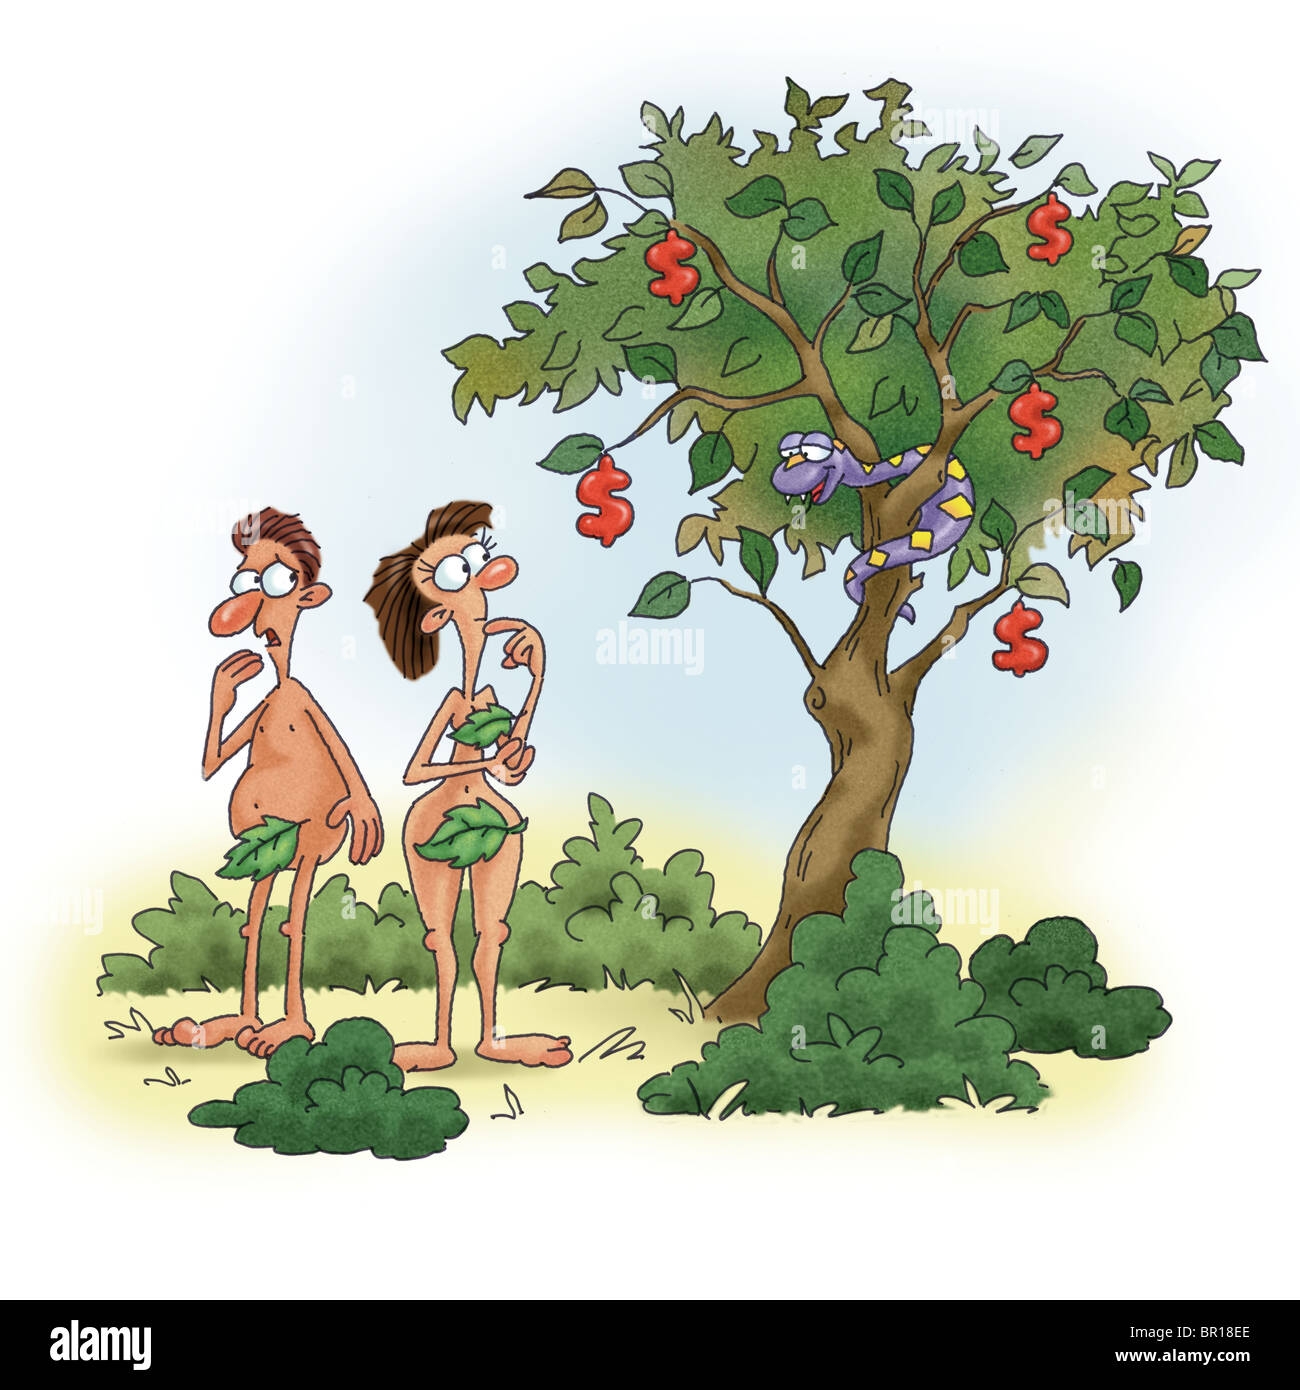 Адам и ева у яблони рисунок